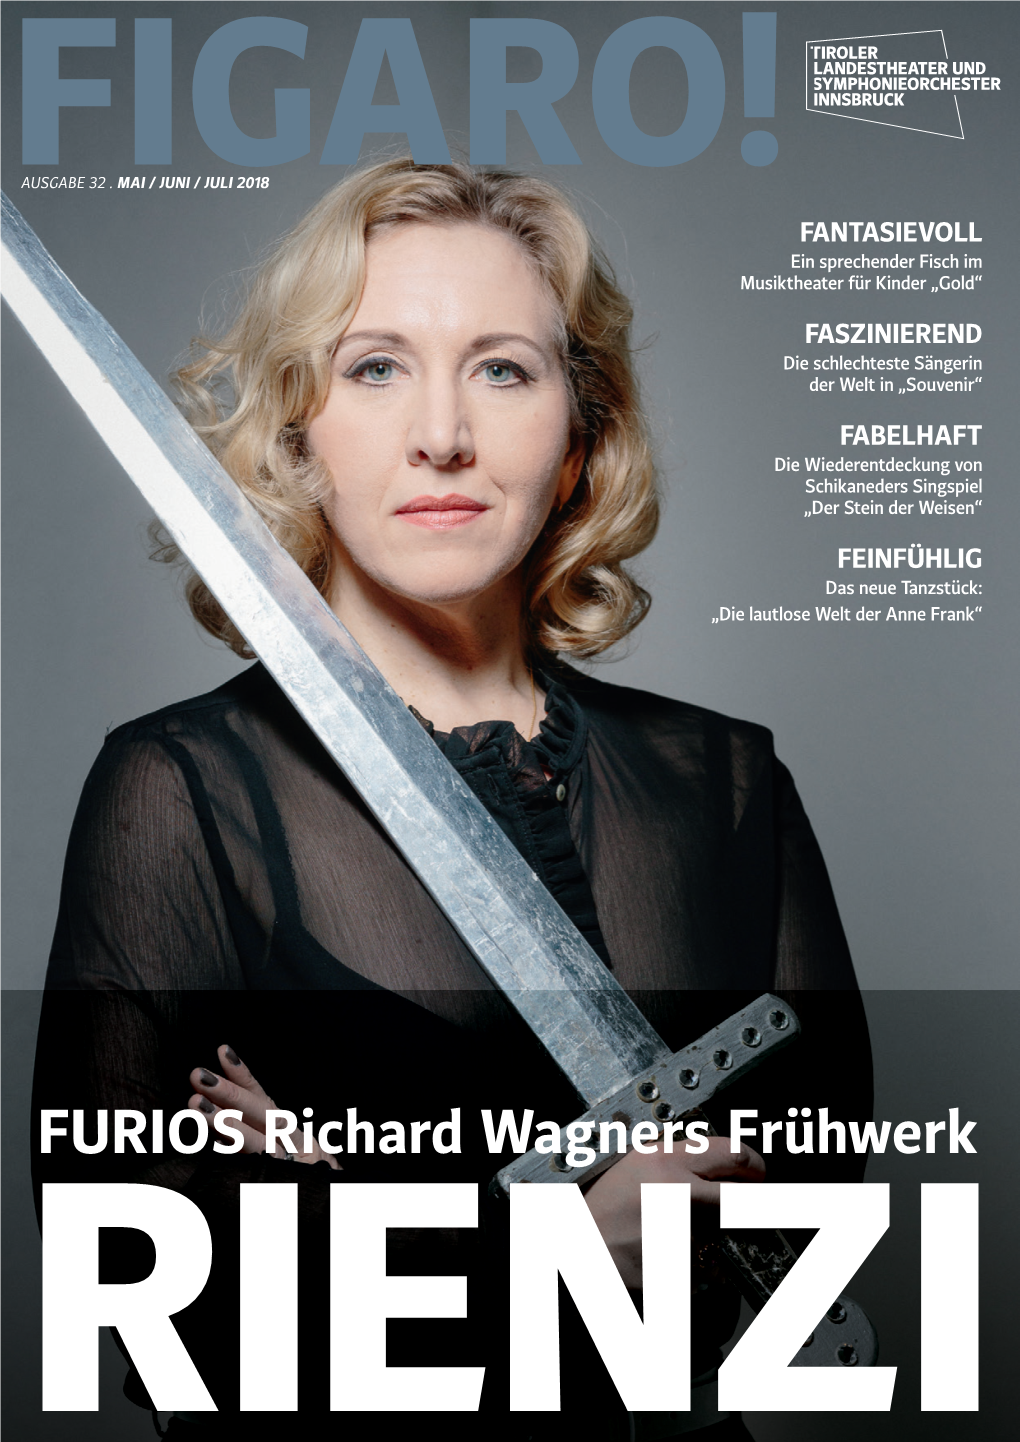 FURIOS Richard Wagners Frühwerk